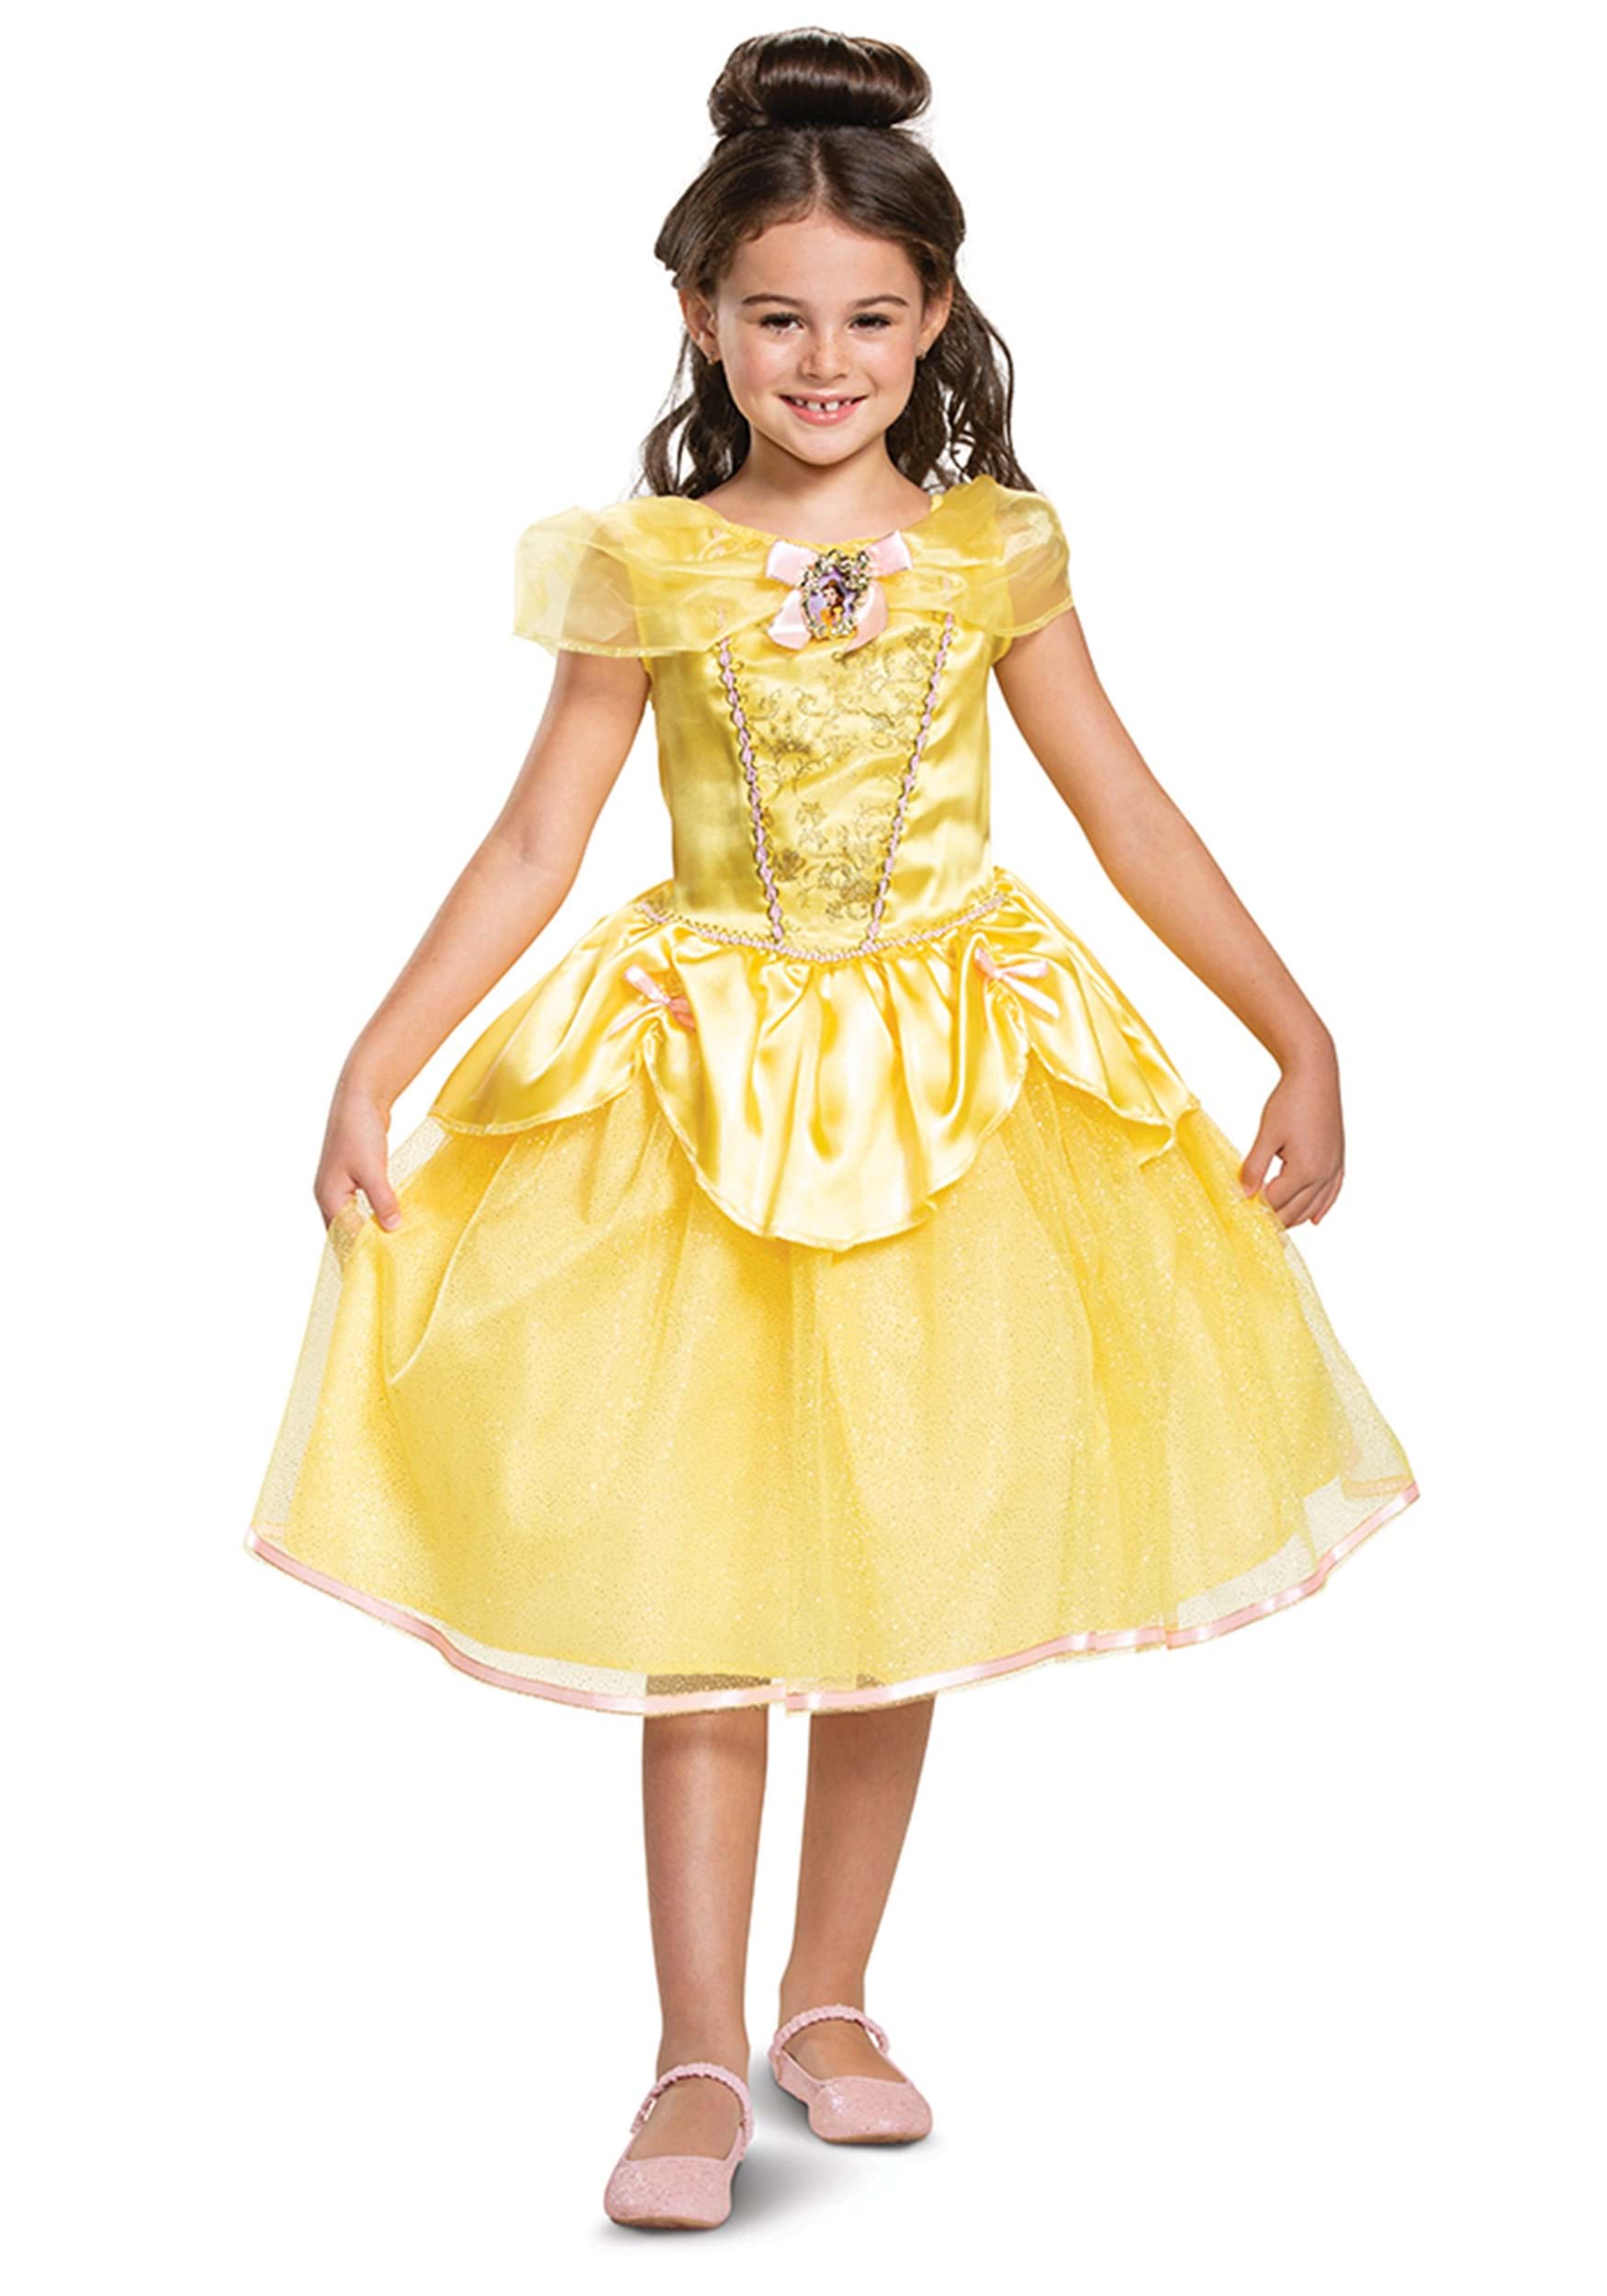 Belleza y la bestia- belle belle clásica disfraz para niños Multicolor